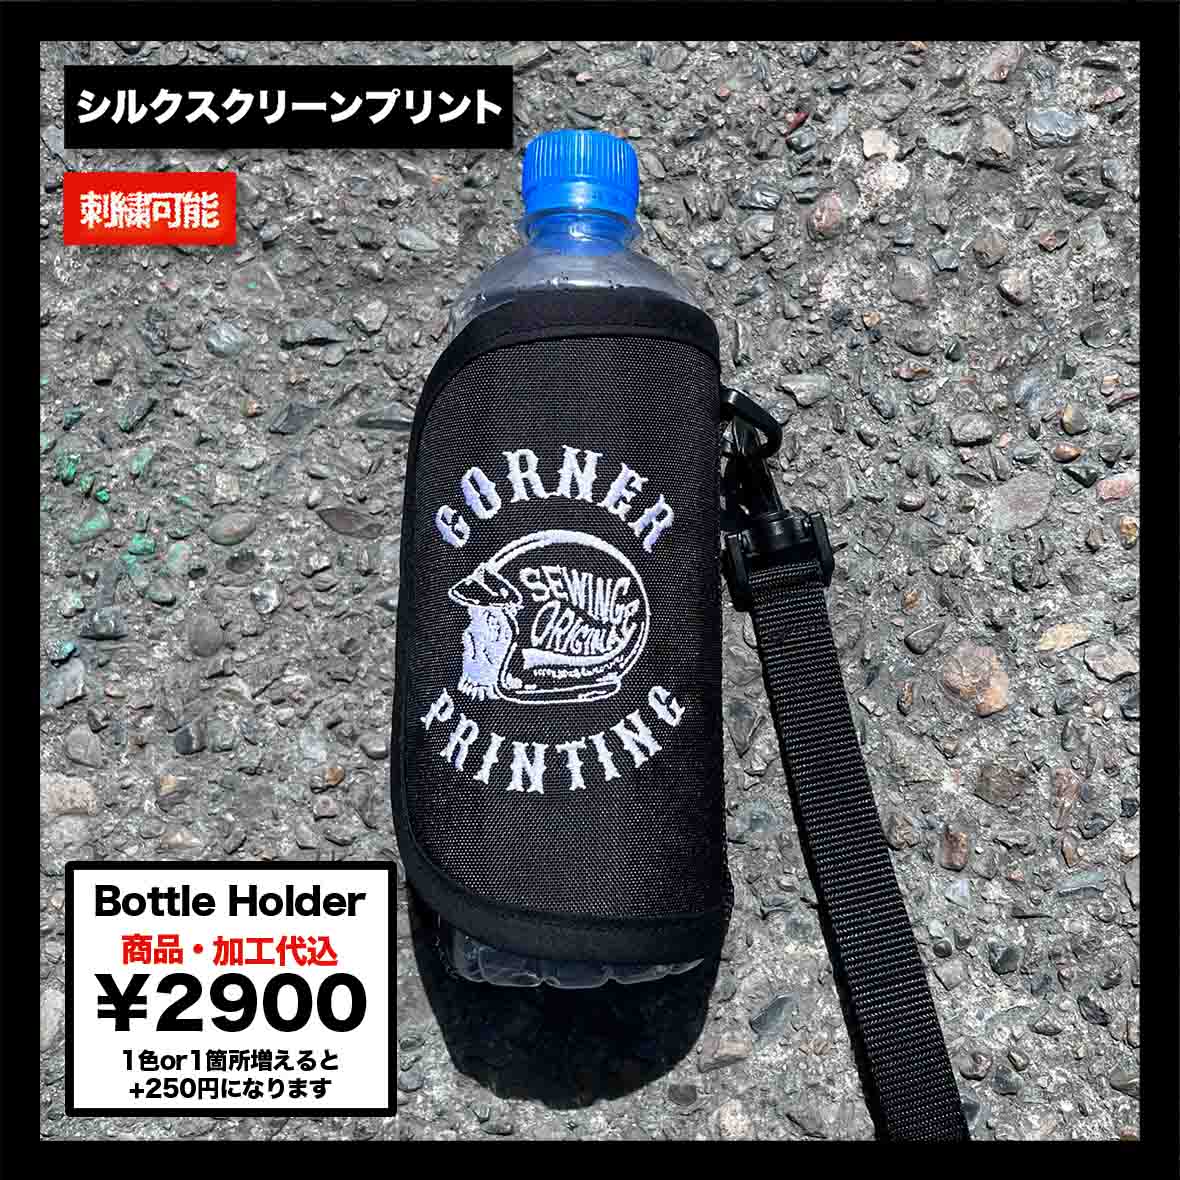 Bottle Holder (品番CPSEW006)